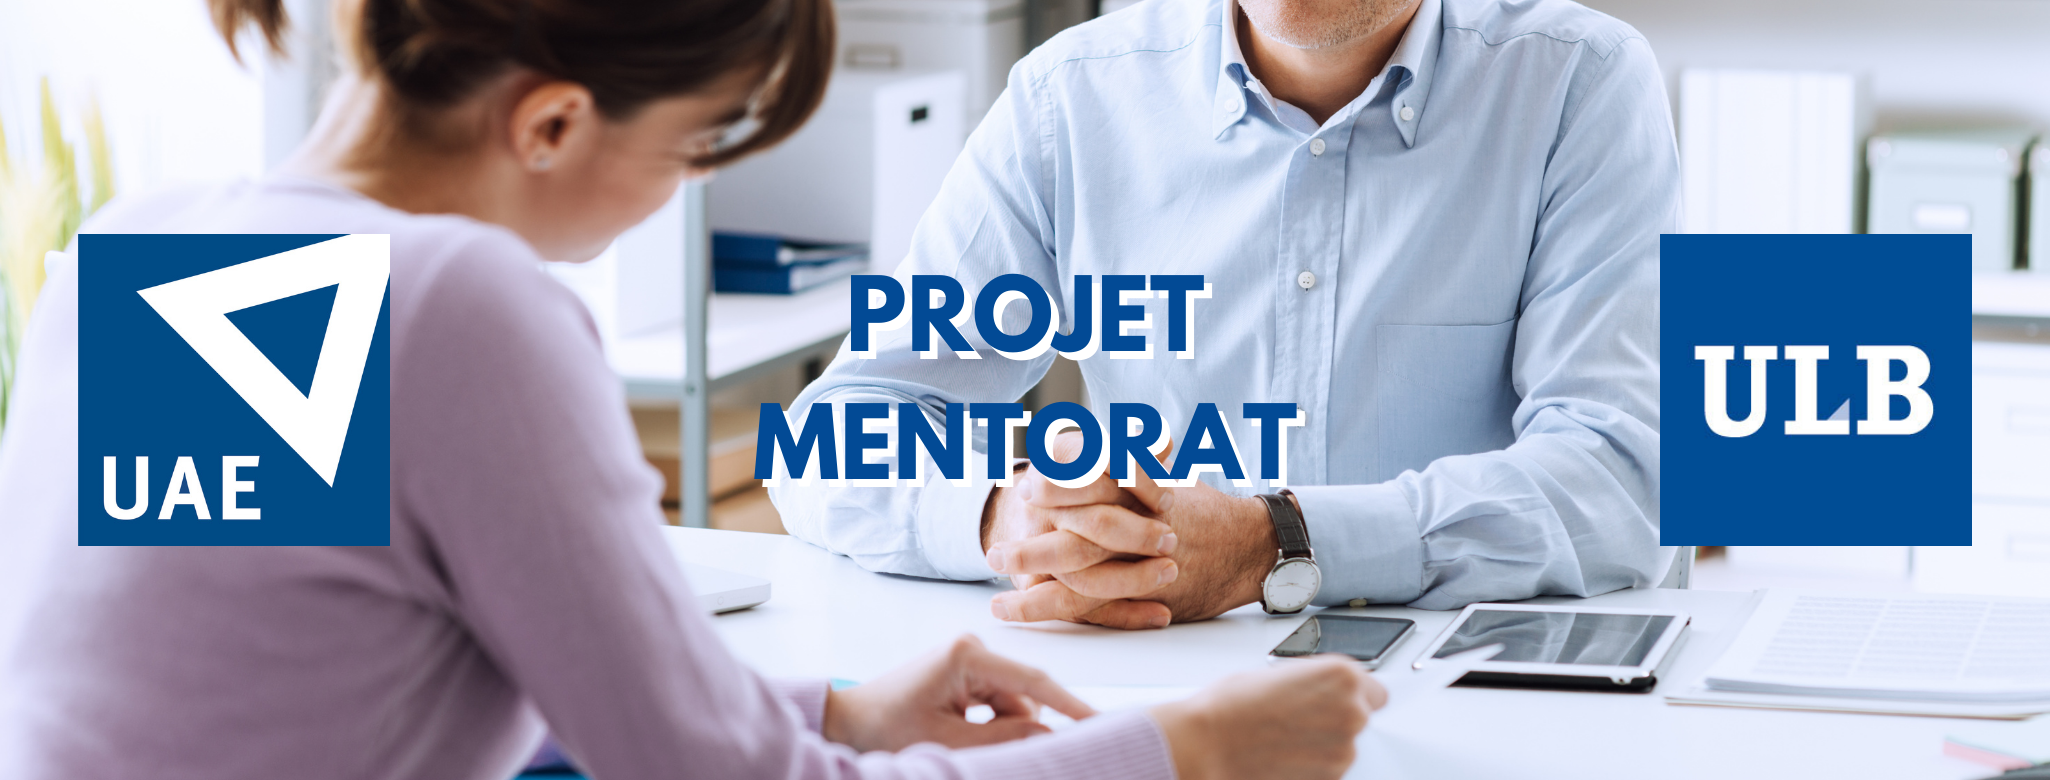 Participez au projet Mentorat UAE – ULB